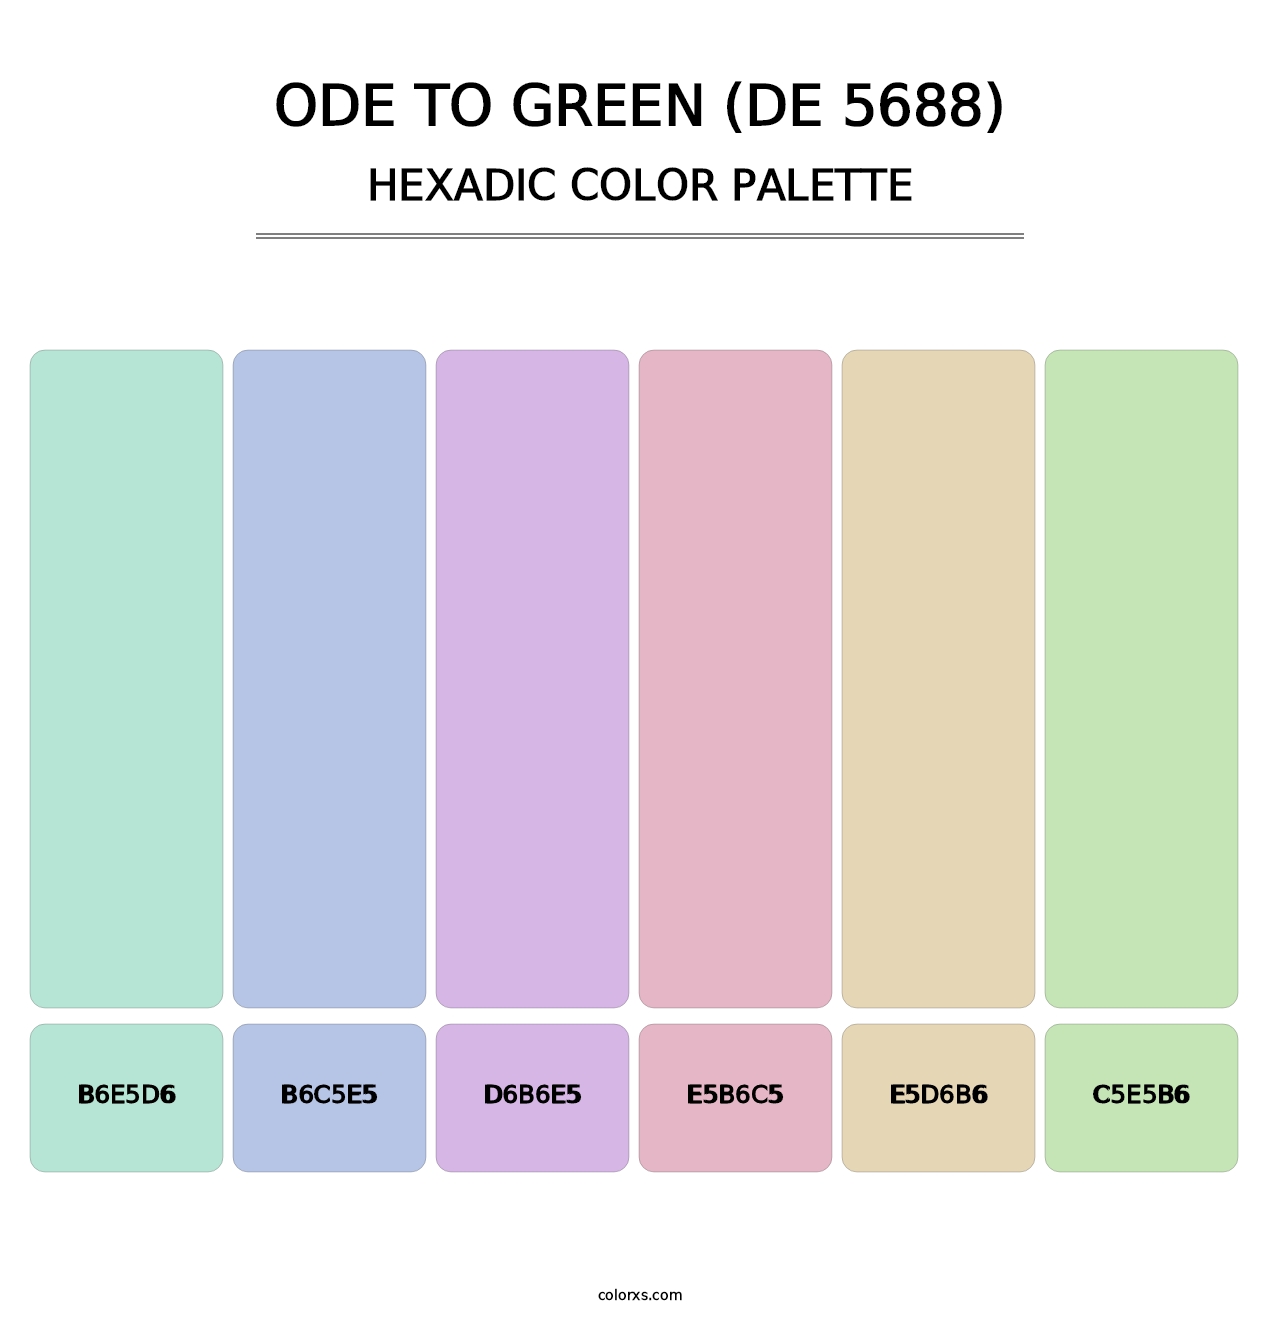 Ode to Green (DE 5688) - Hexadic Color Palette